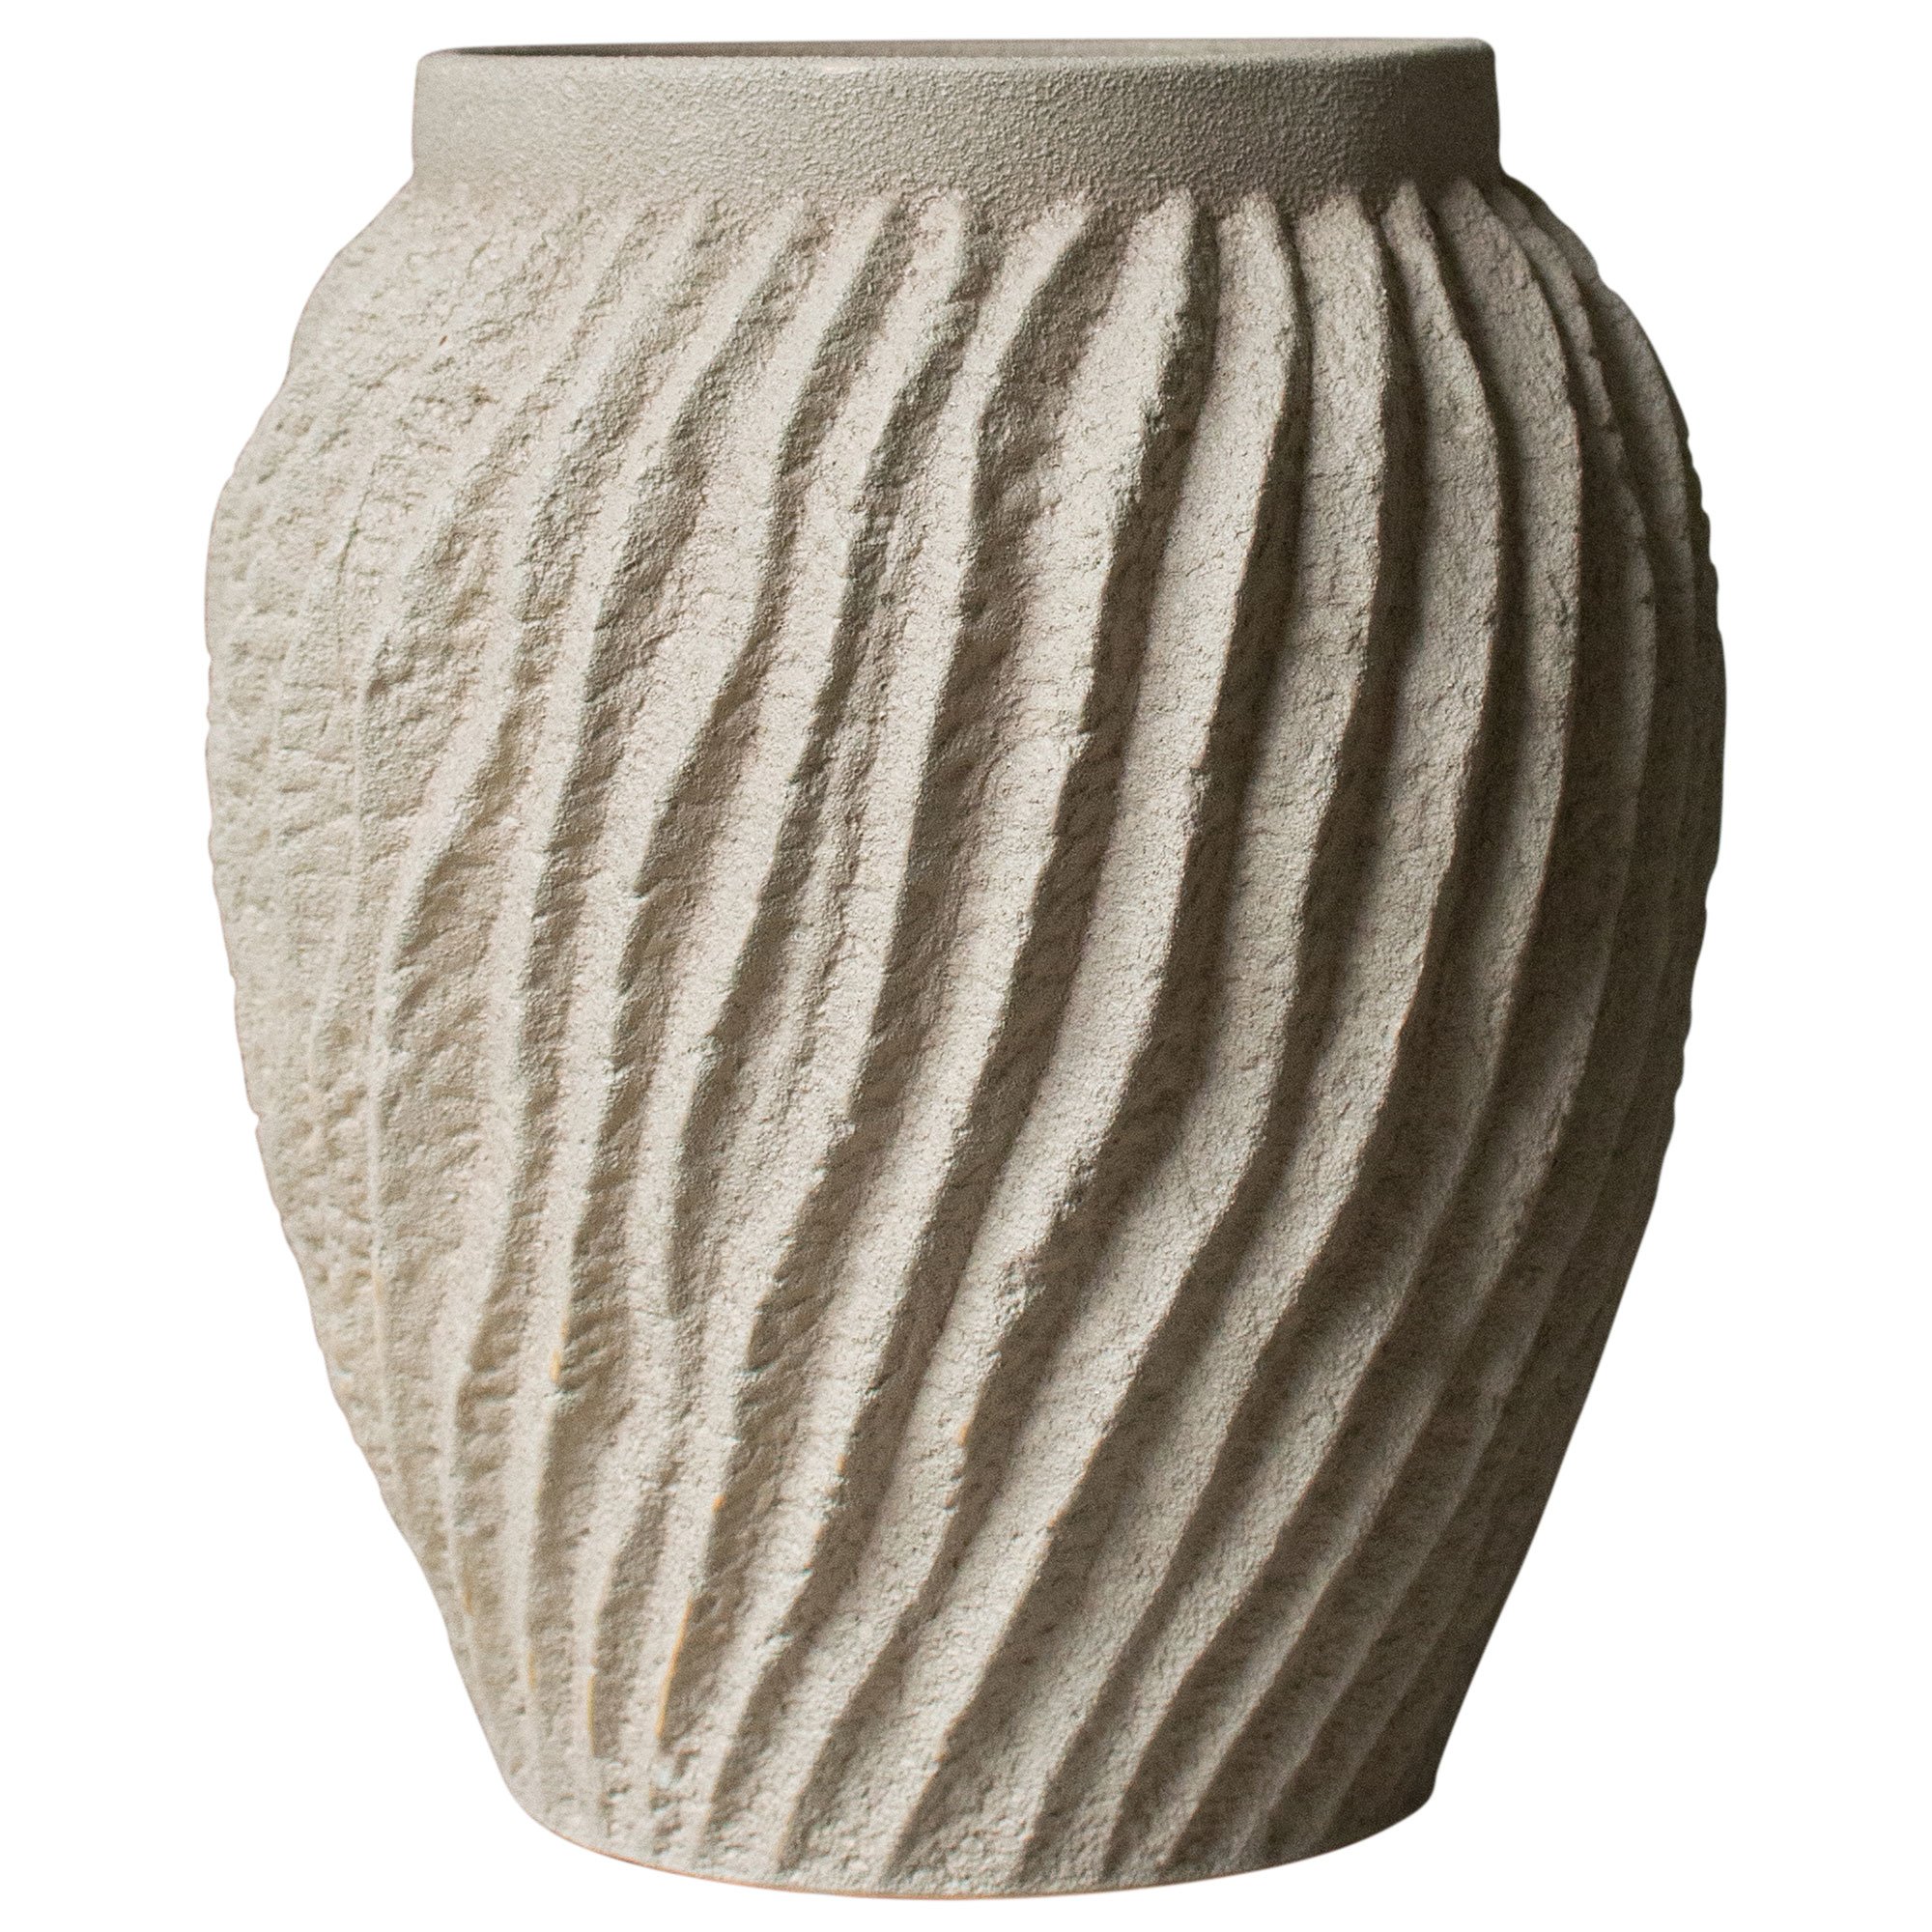 DBKD Raw vas, 29 cm, sandy mole